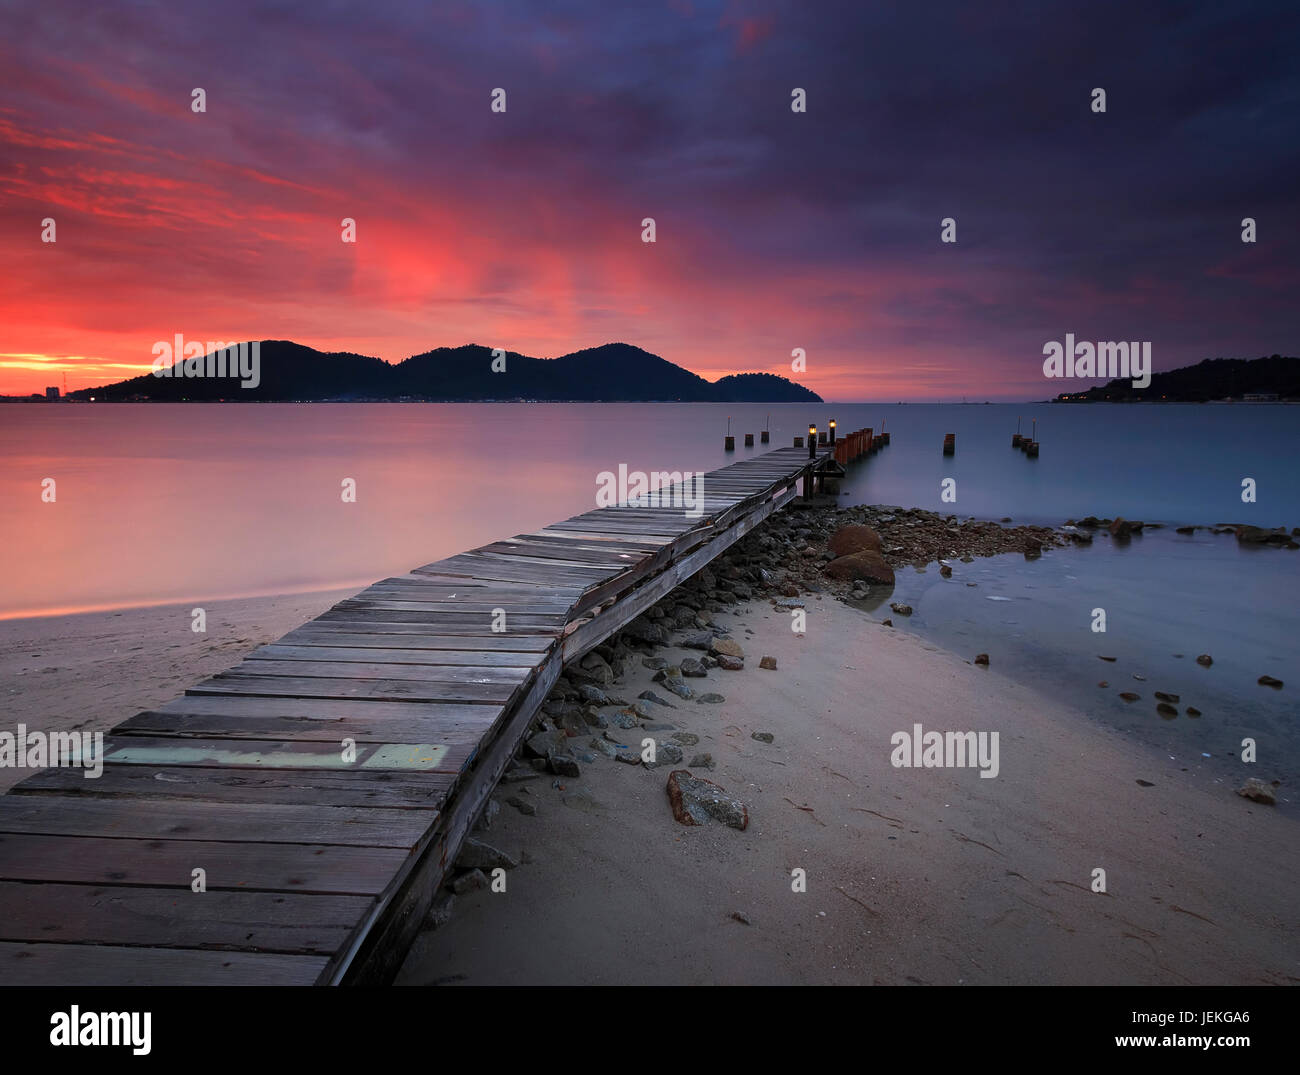 Jetée en bois au coucher du soleil, Marina, île, Malaisie Perak Lumut Banque D'Images